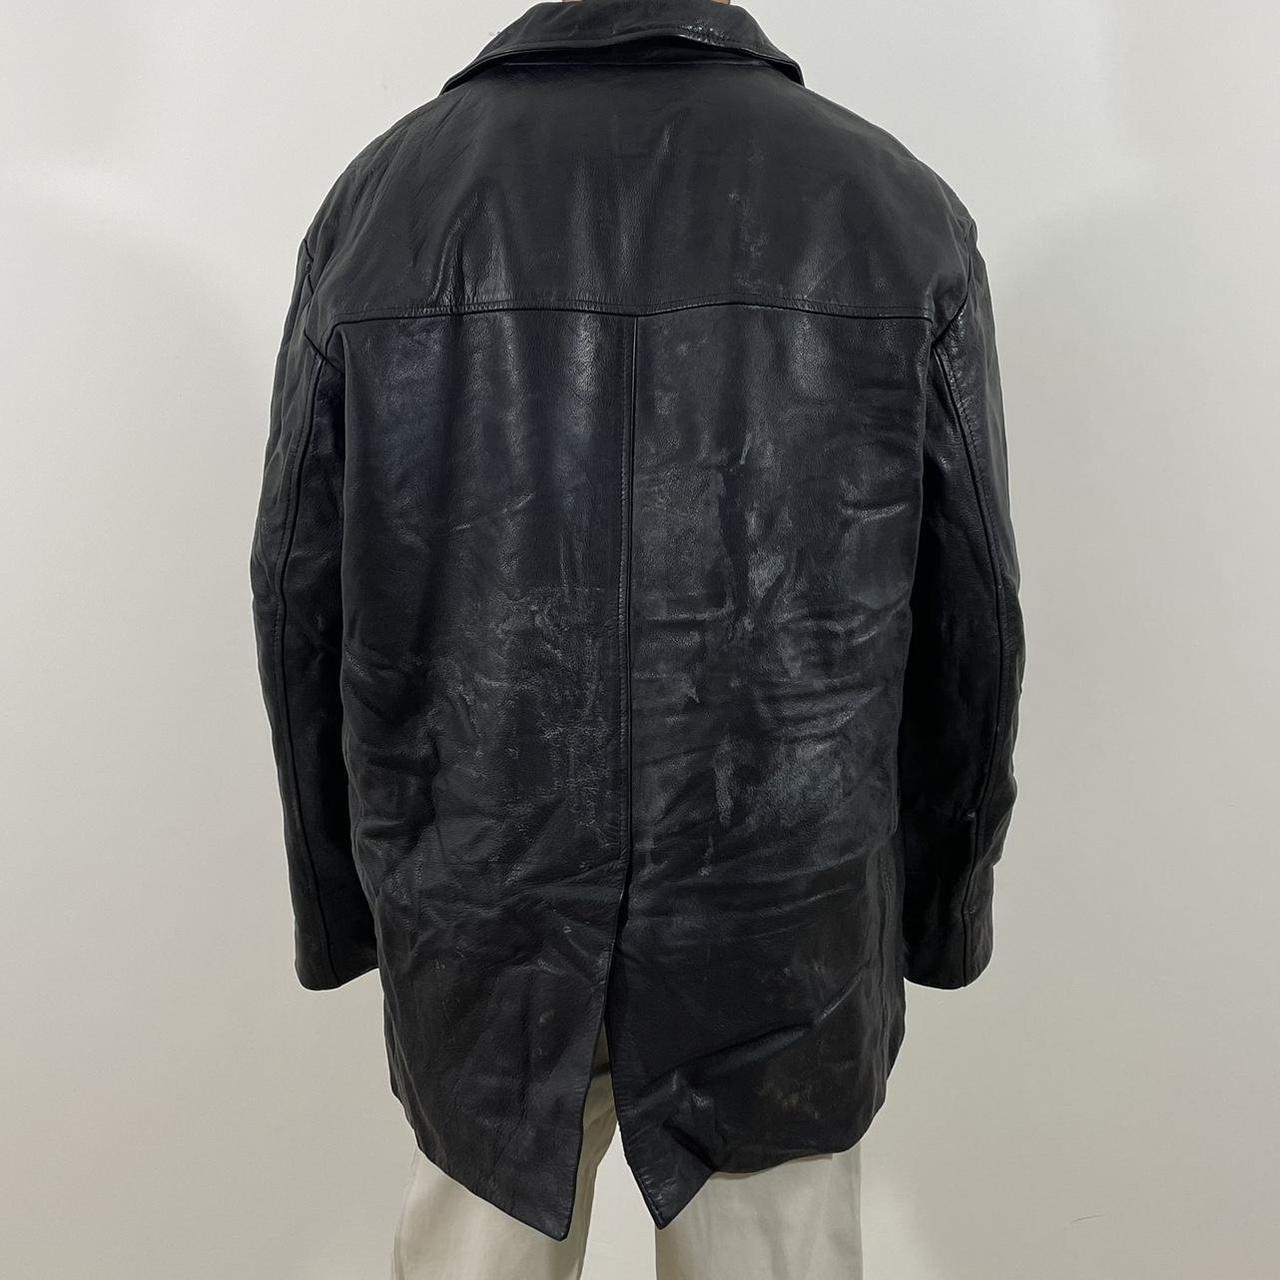 Vintage Original Ben Sherman Leather Jacket🧥 •In A... - Depop